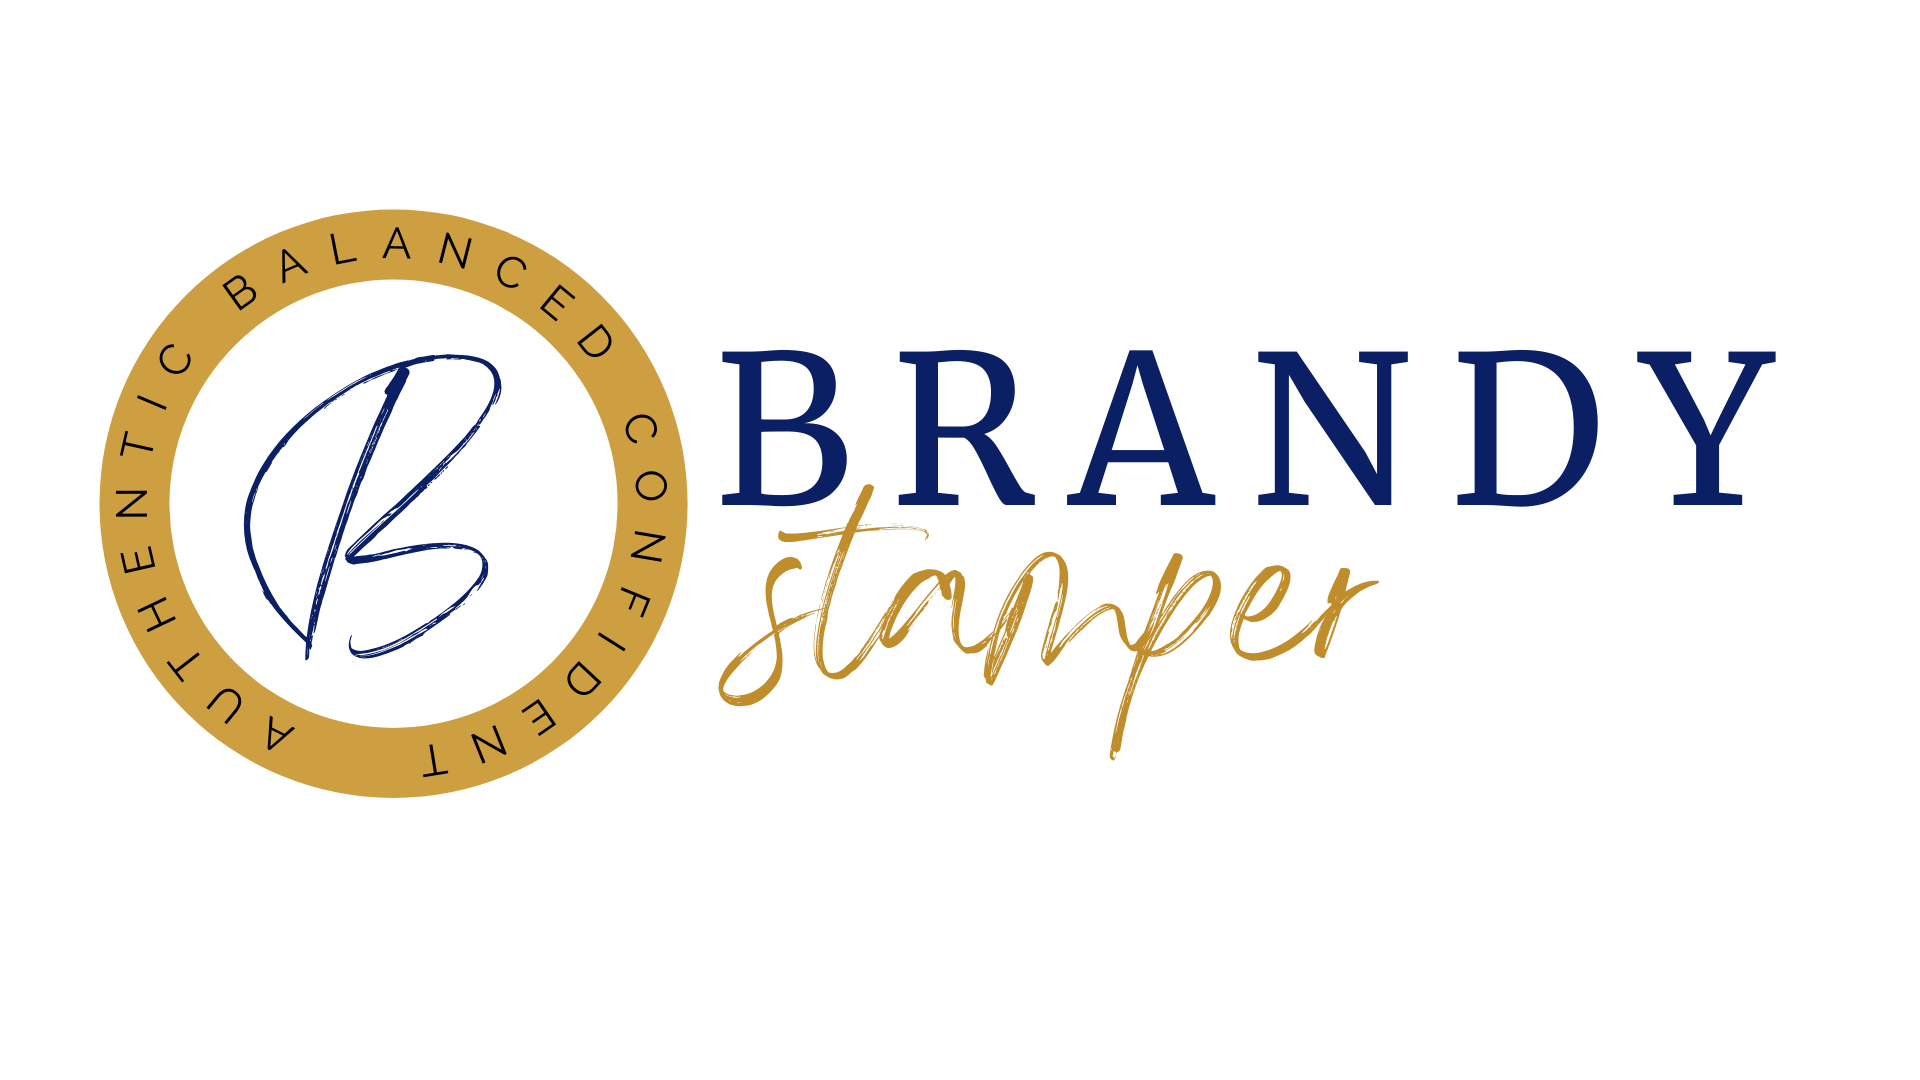 Brandy Stamper Coaching